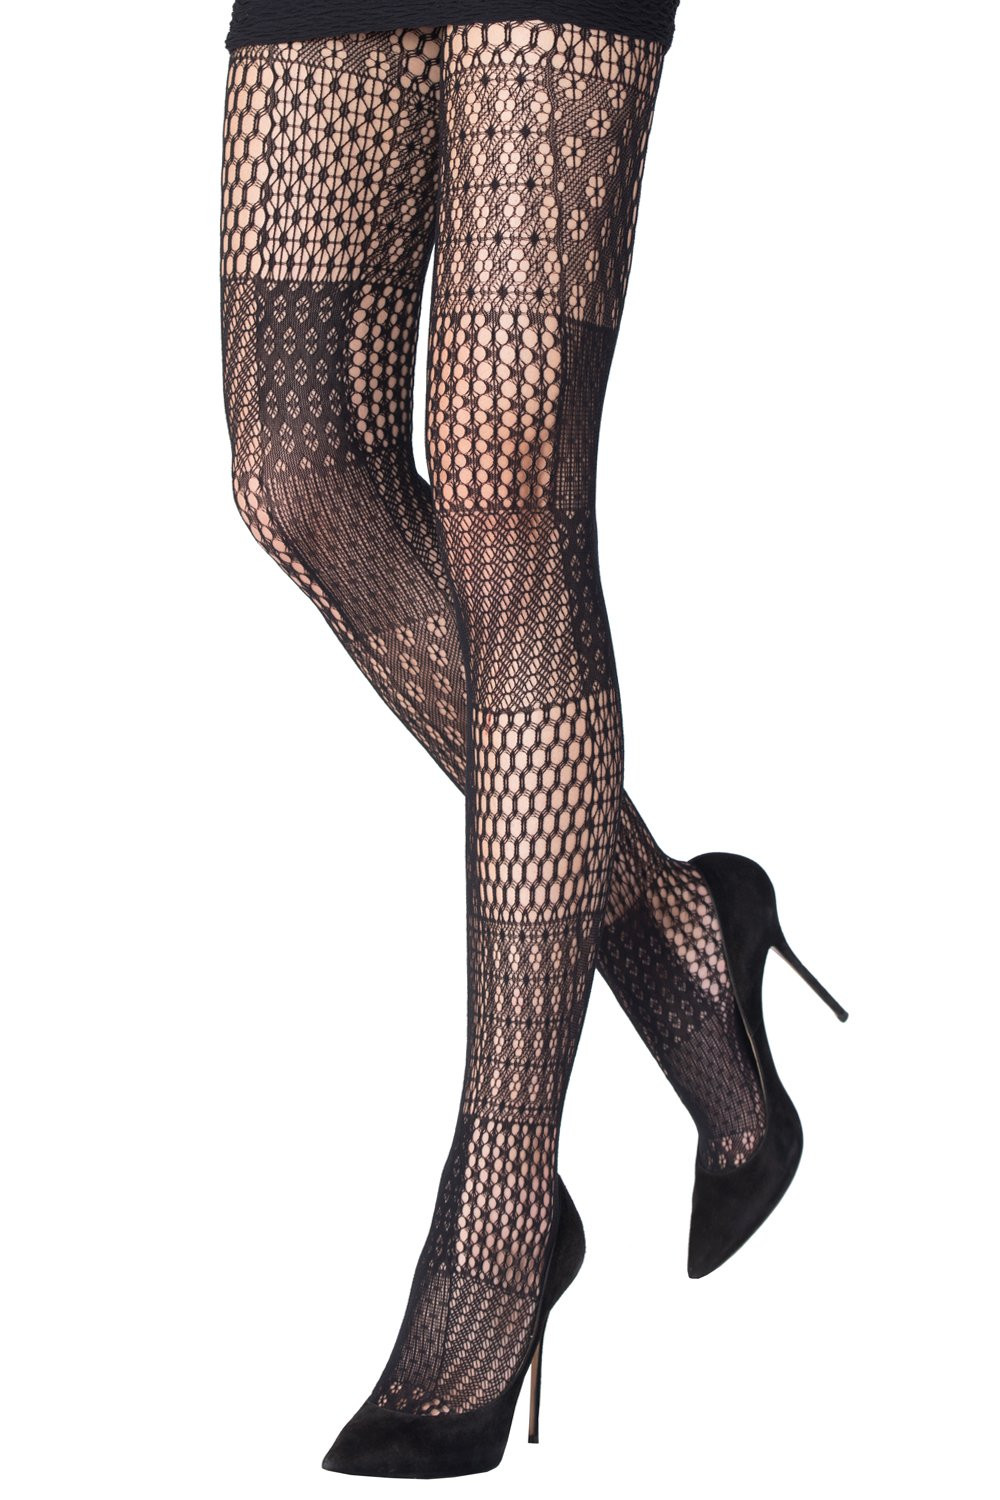 Buy Lace-top Stockings - Order Hosiery online 1119755300